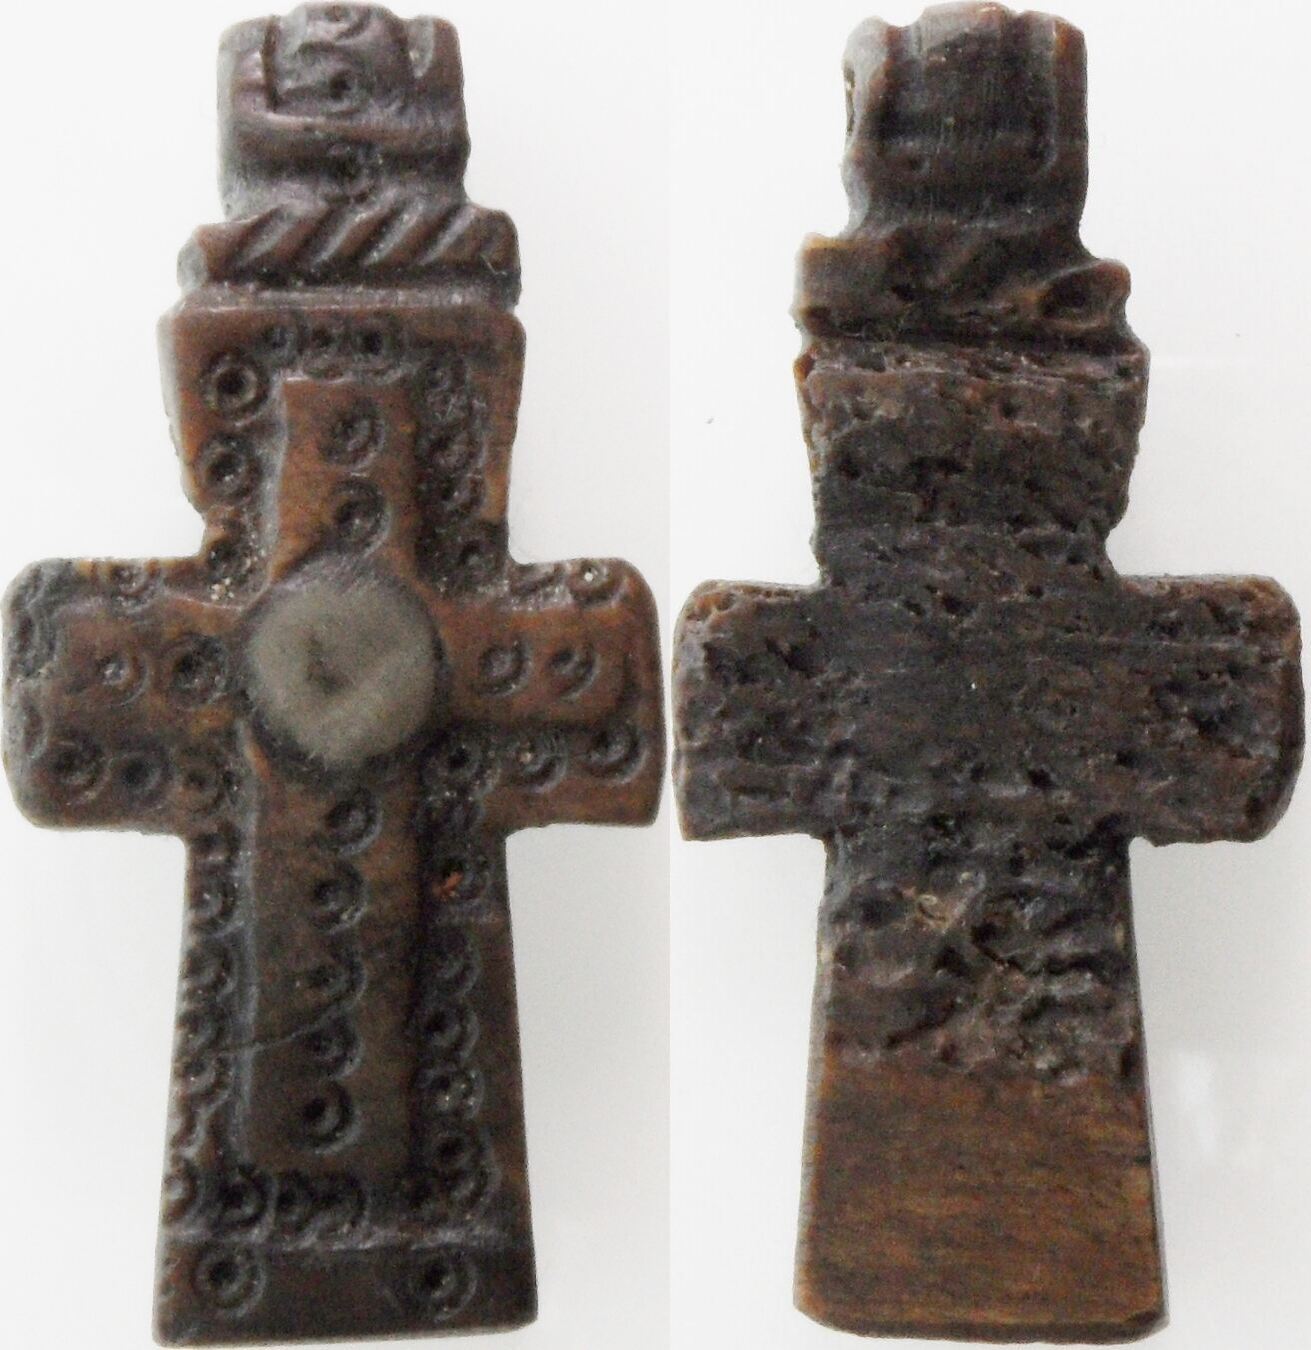 a 14th century cross